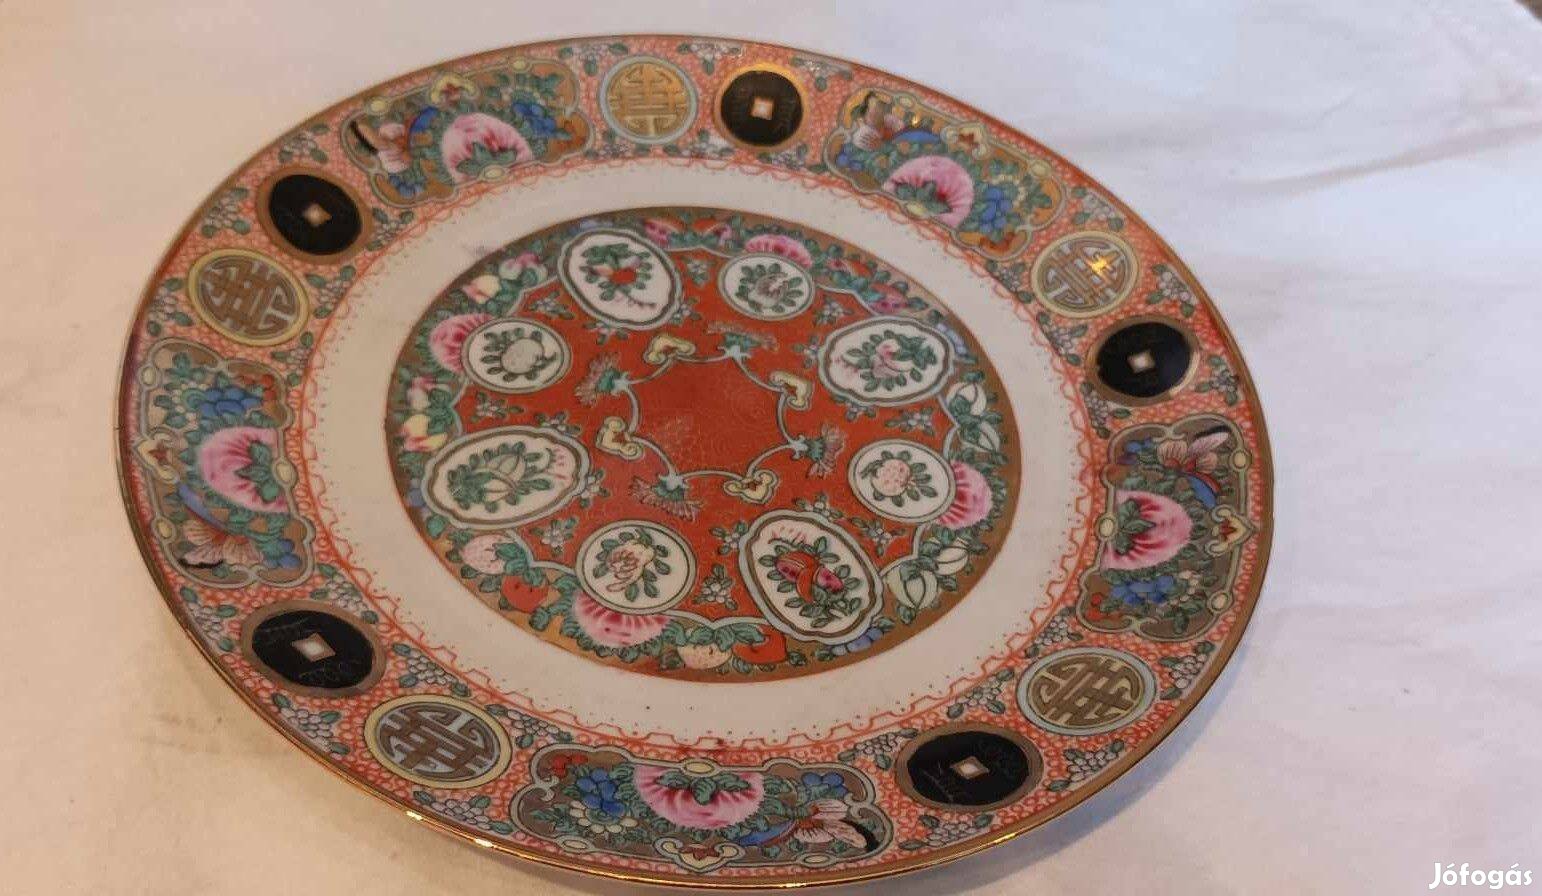 Kínai porcelán tányér